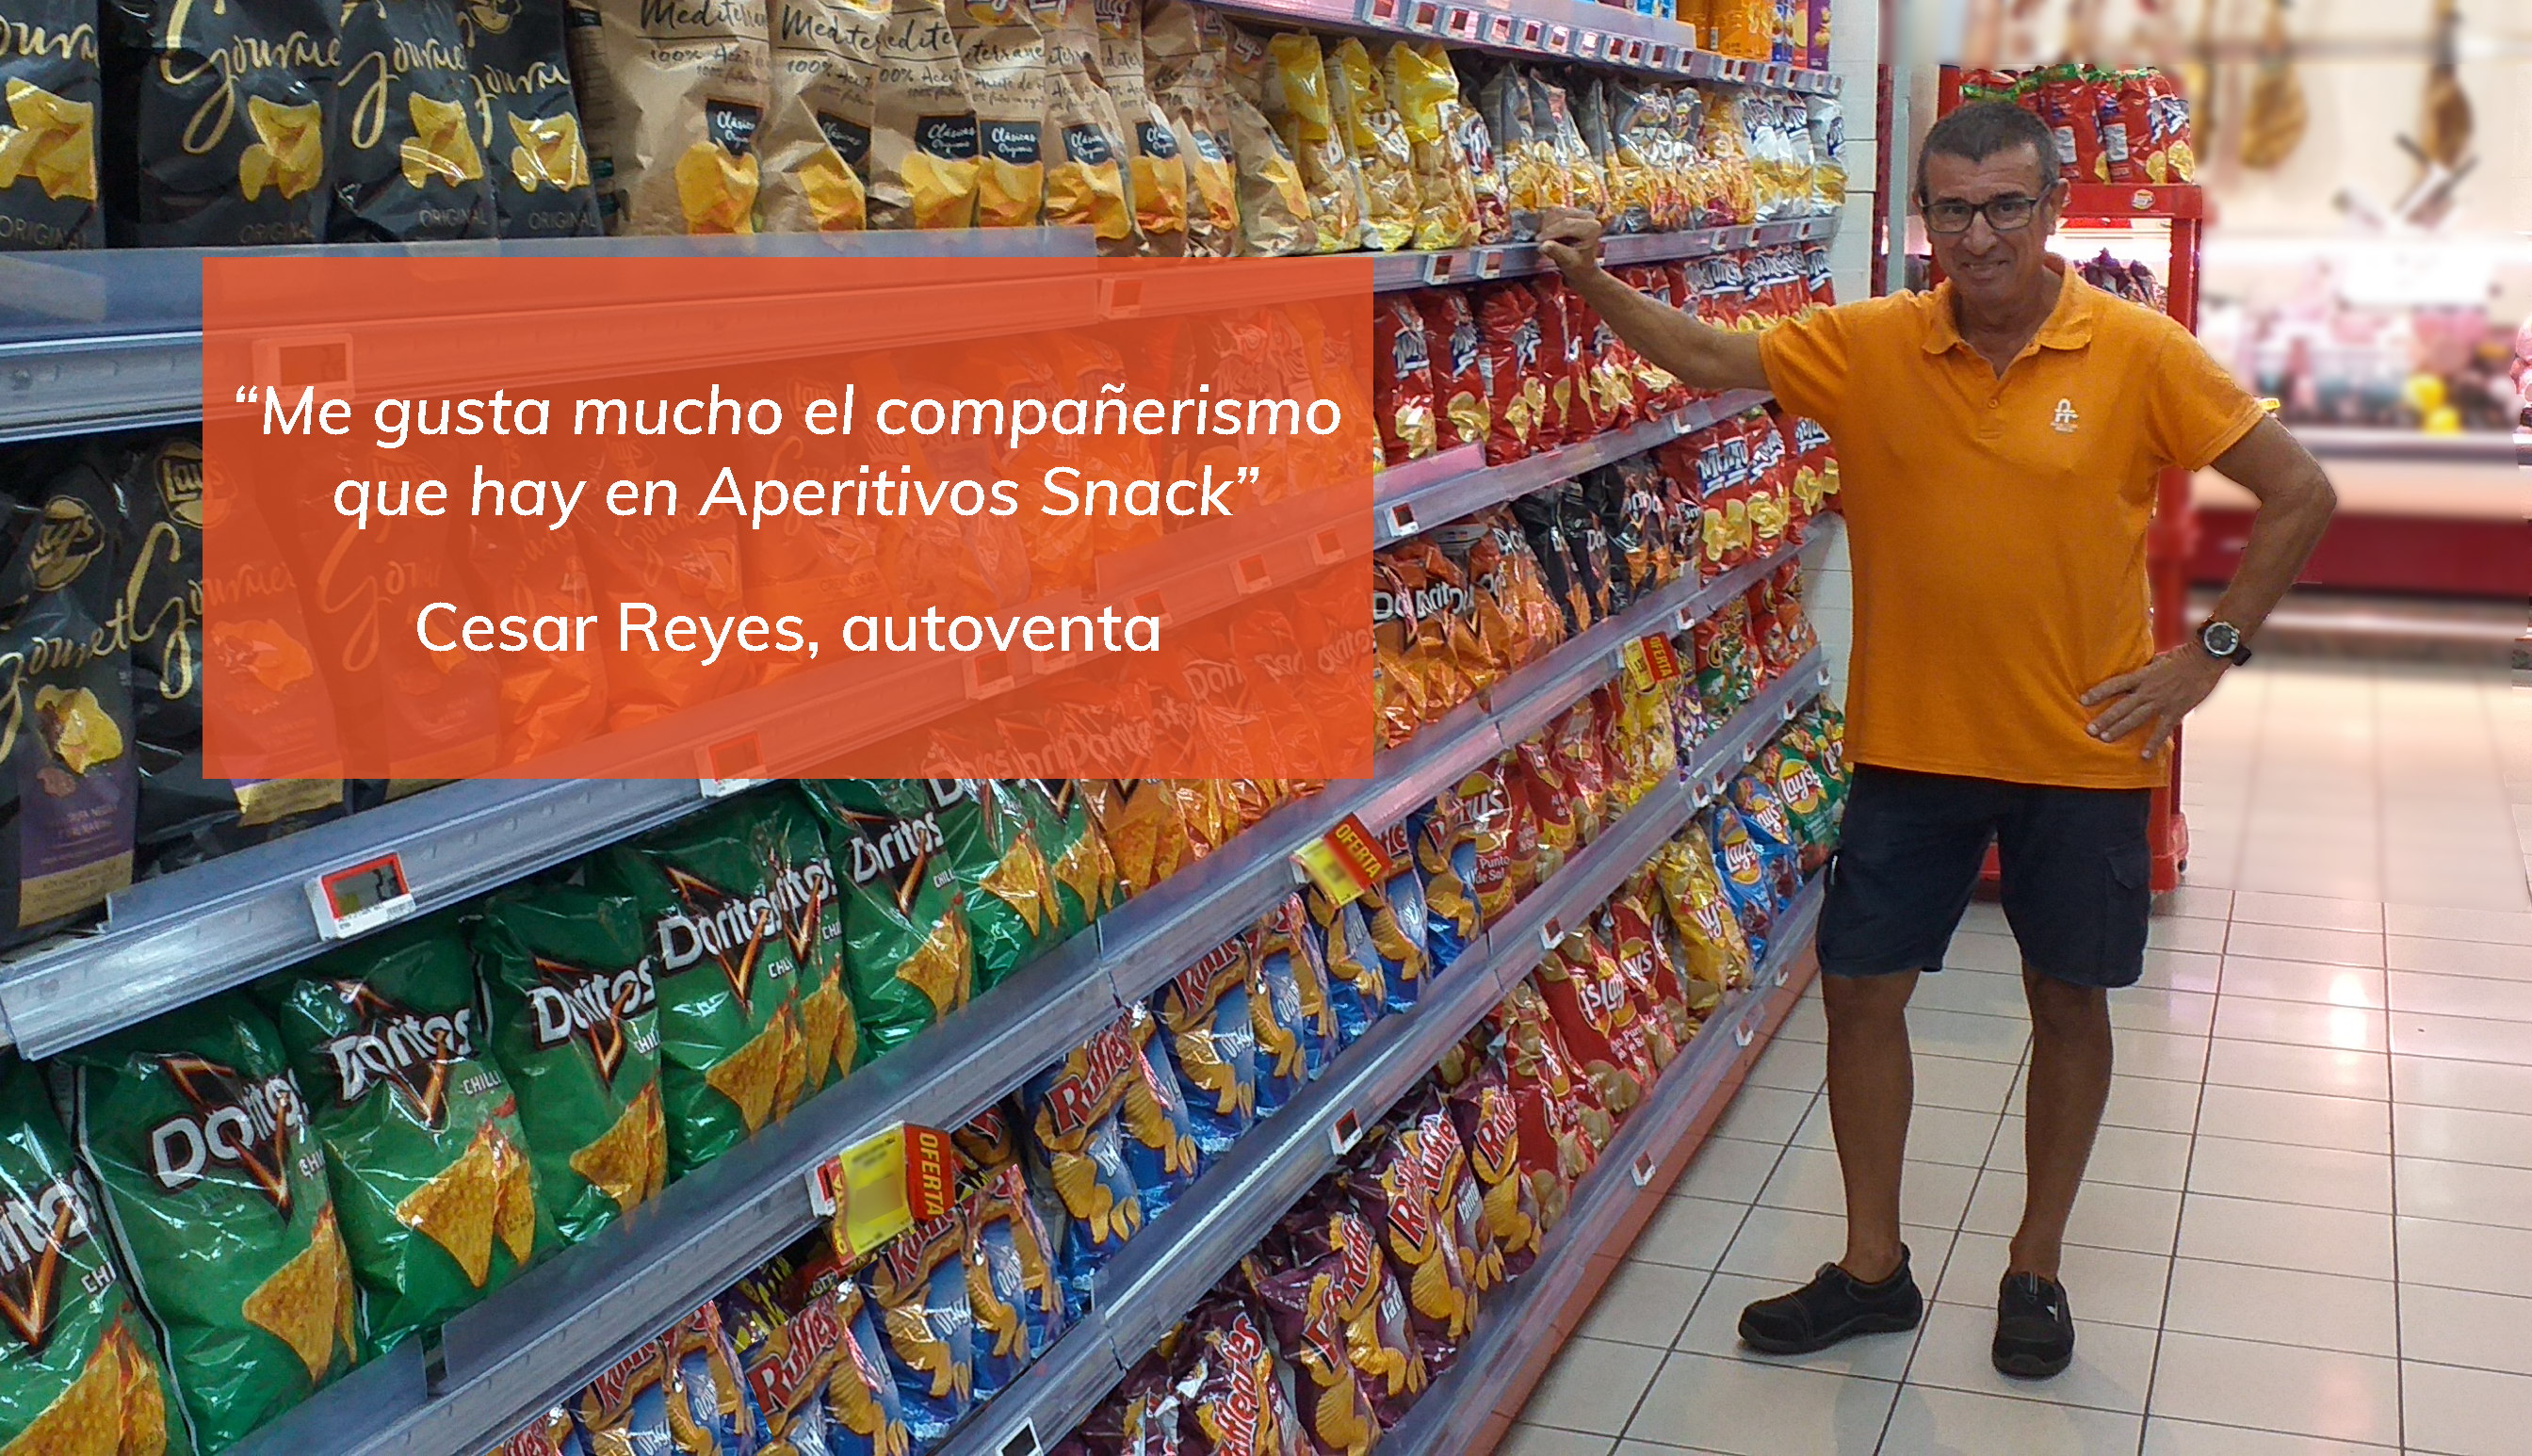 Compromiso Aperitivos Snack: César Reyes, confianza y trato exquisito con el cliente